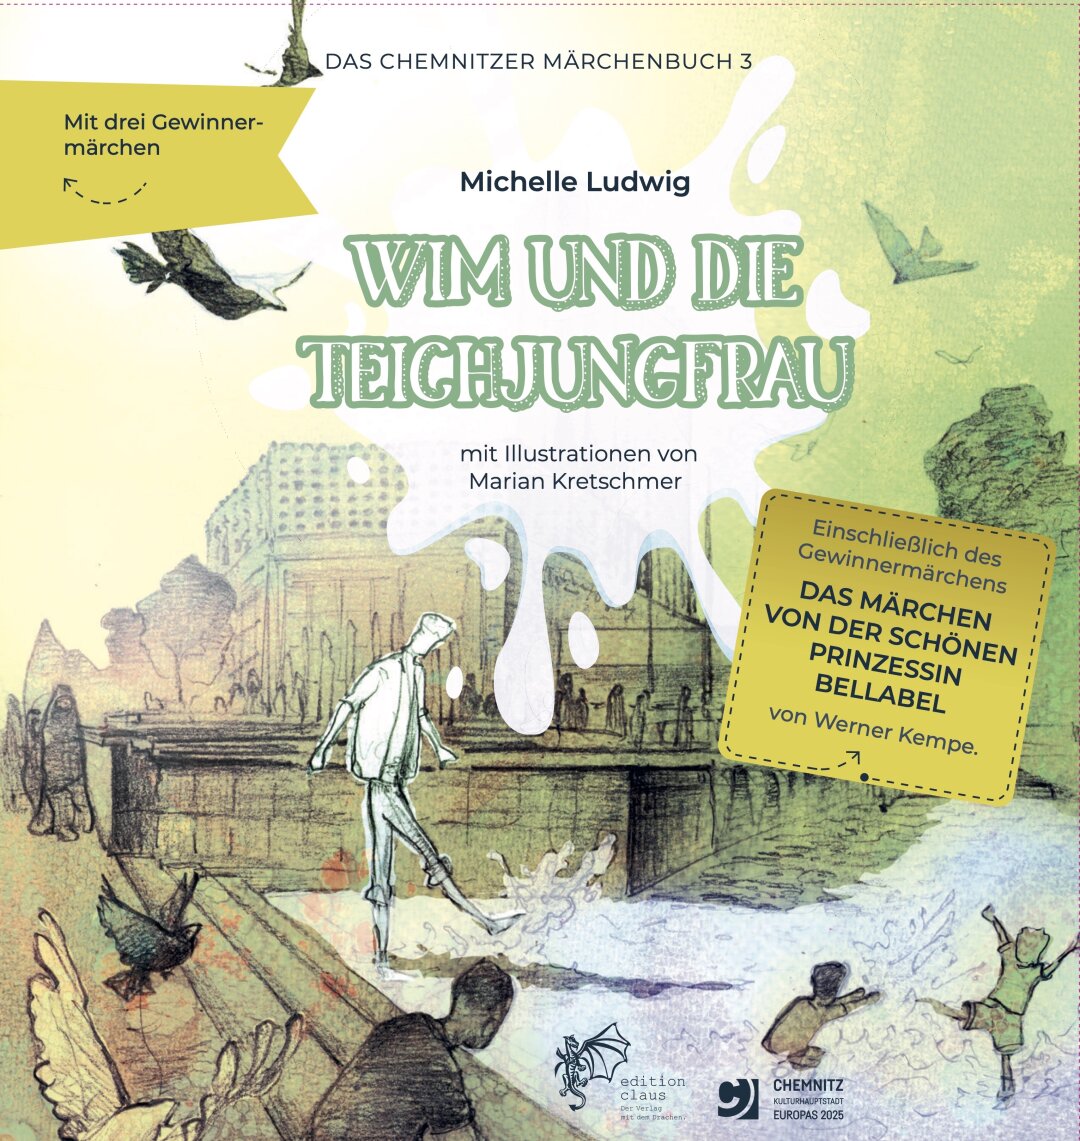 Geschichten für das vierte Chemnitzer Märchenbuch gesucht